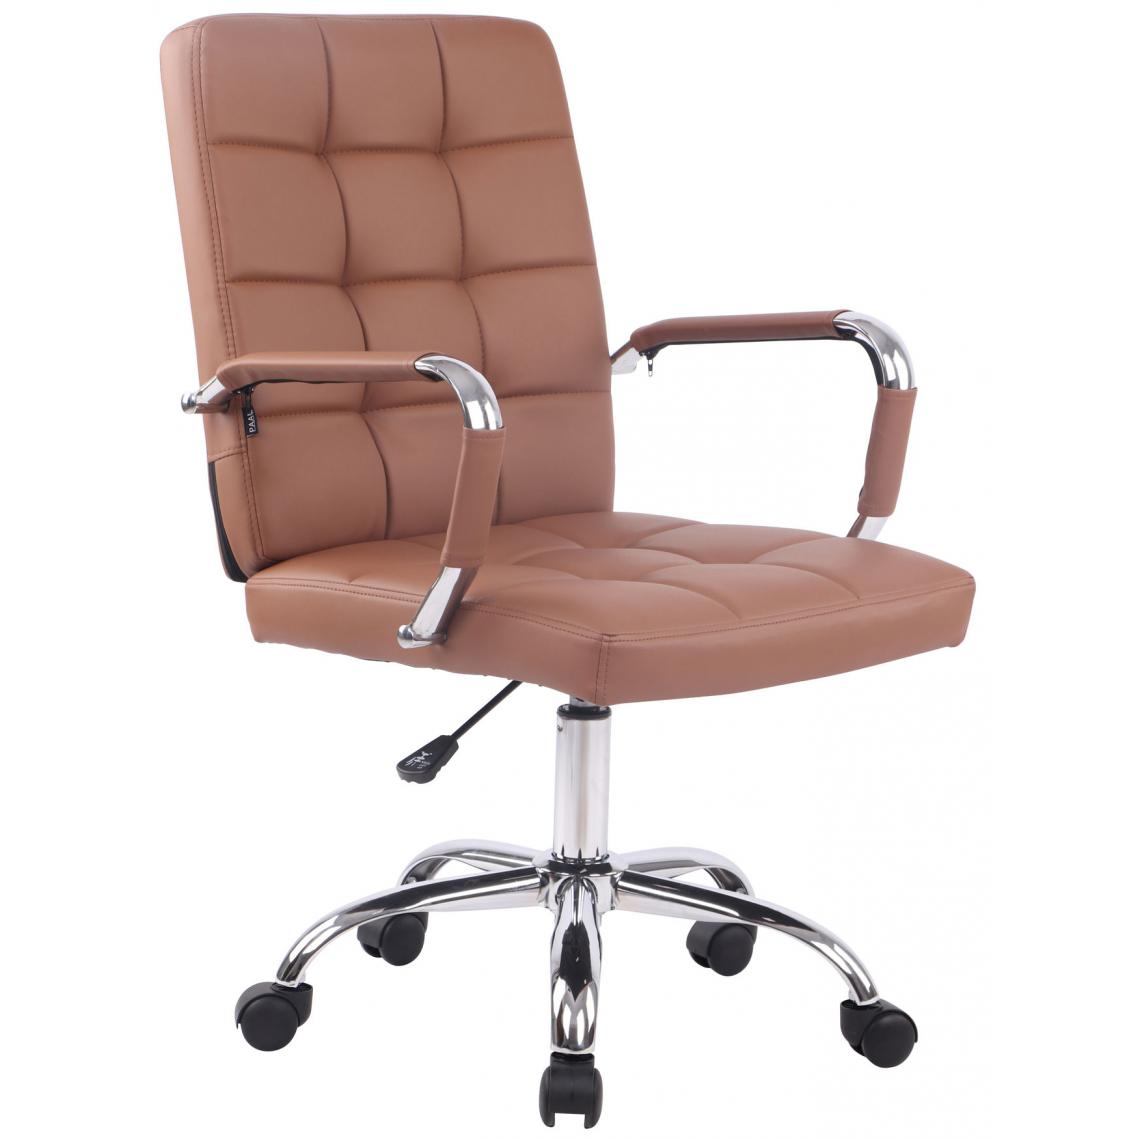 Icaverne - Superbe Chaise de bureau selection Helsinki PRO simili cuir couleur brun clair - Chaises